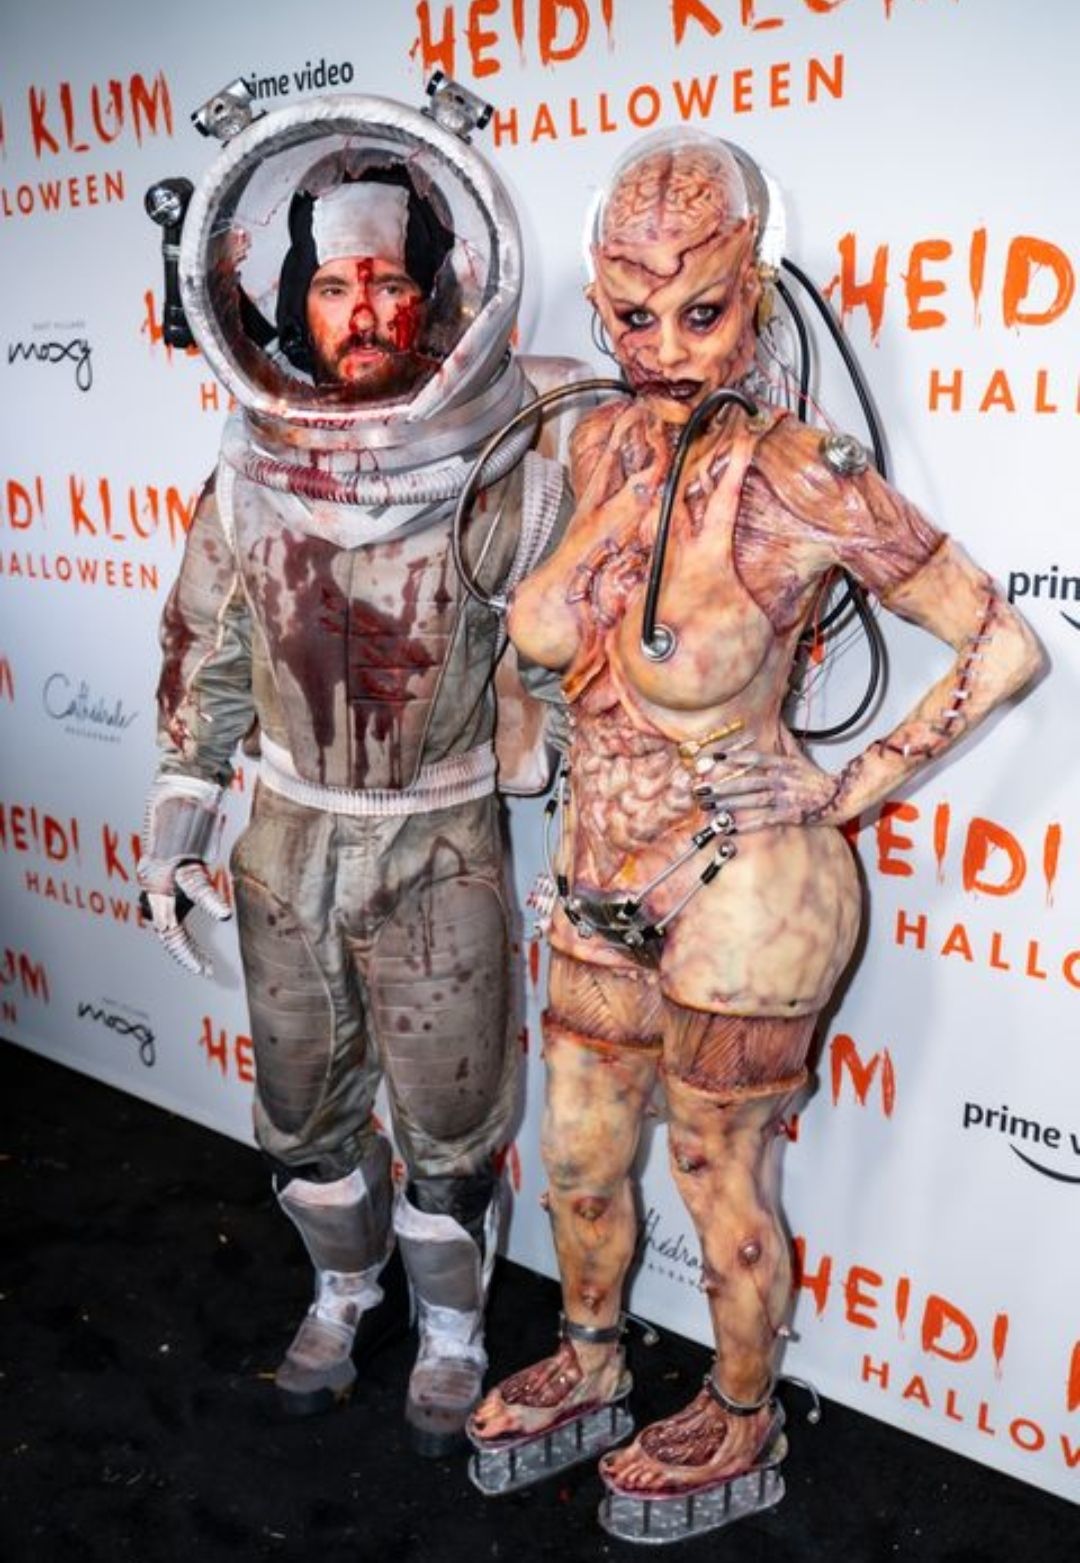  Heidi Klum sebagai Alien